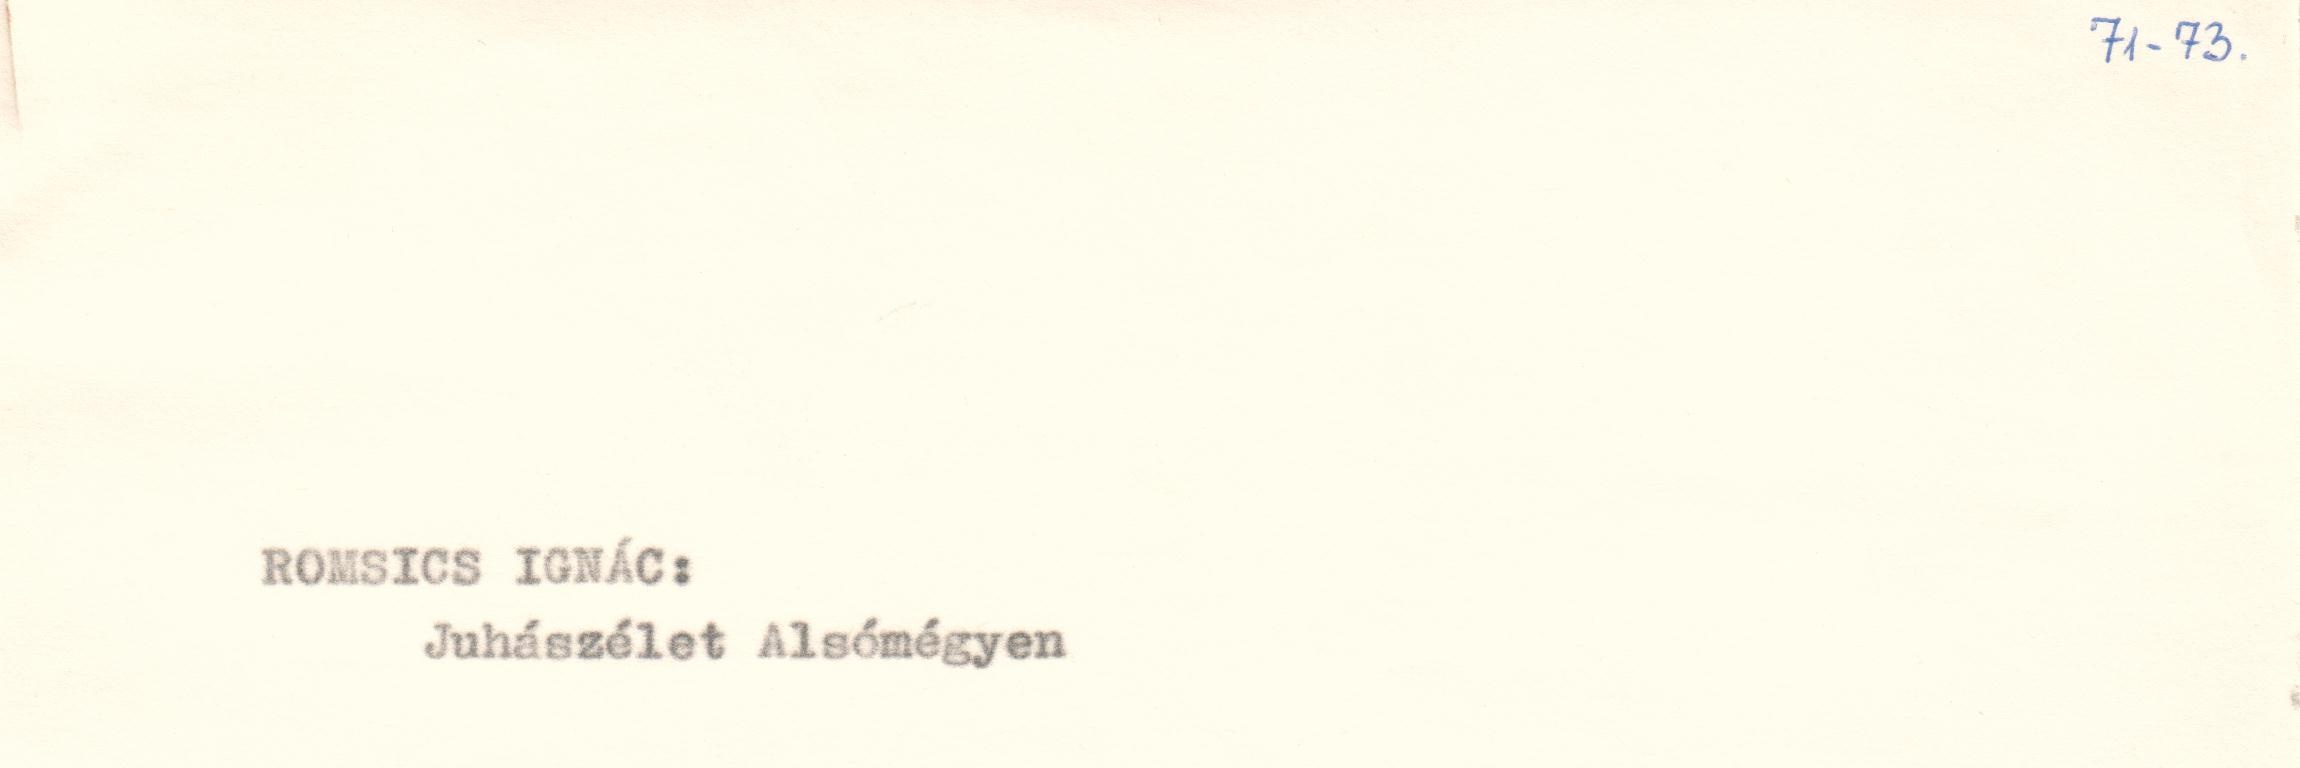 Juhászélet Alsómégyen c. cikk kézirata (Viski Károly Múzeum Kalocsa RR-F)